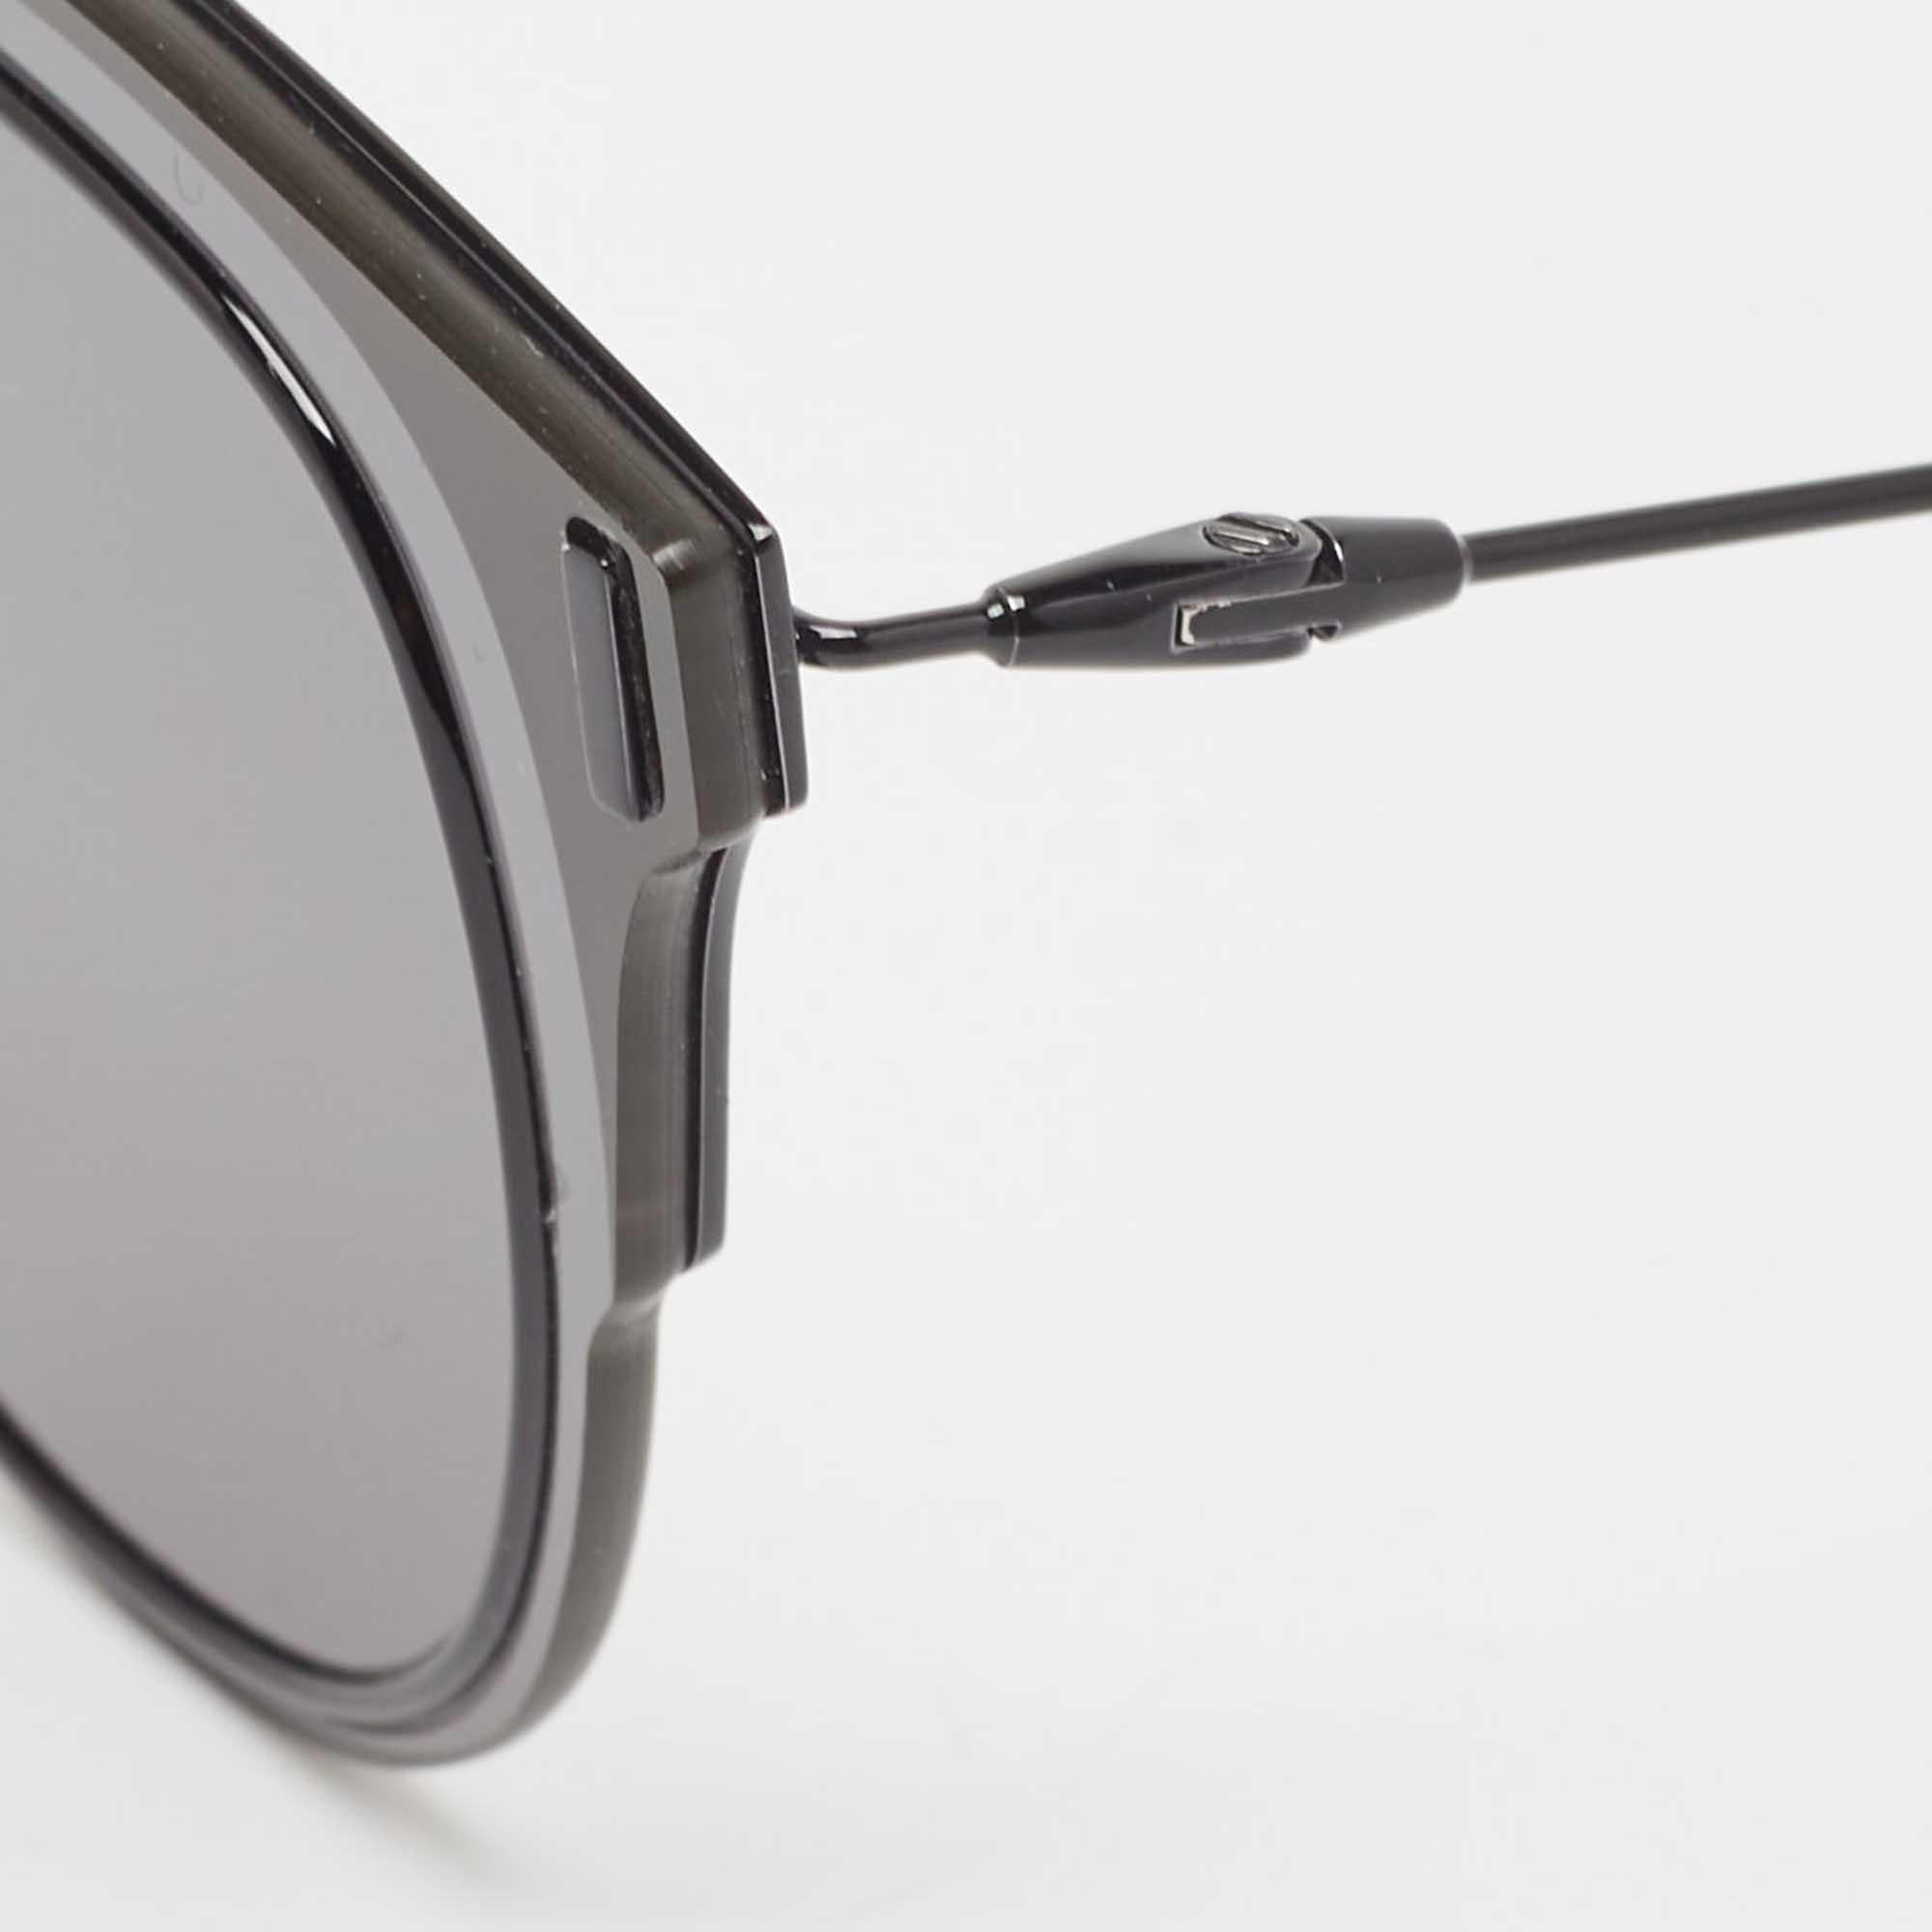 Mit dieser Sonnenbrille von Dior Homme lassen sich sonnige Tage stilvoll genießen. Die luxuriöse Sonnenbrille wurde mit viel Know-how entwickelt und verfügt über einen gut gestalteten Rahmen und hochwertige Gläser, die Ihre Augen schützen.

